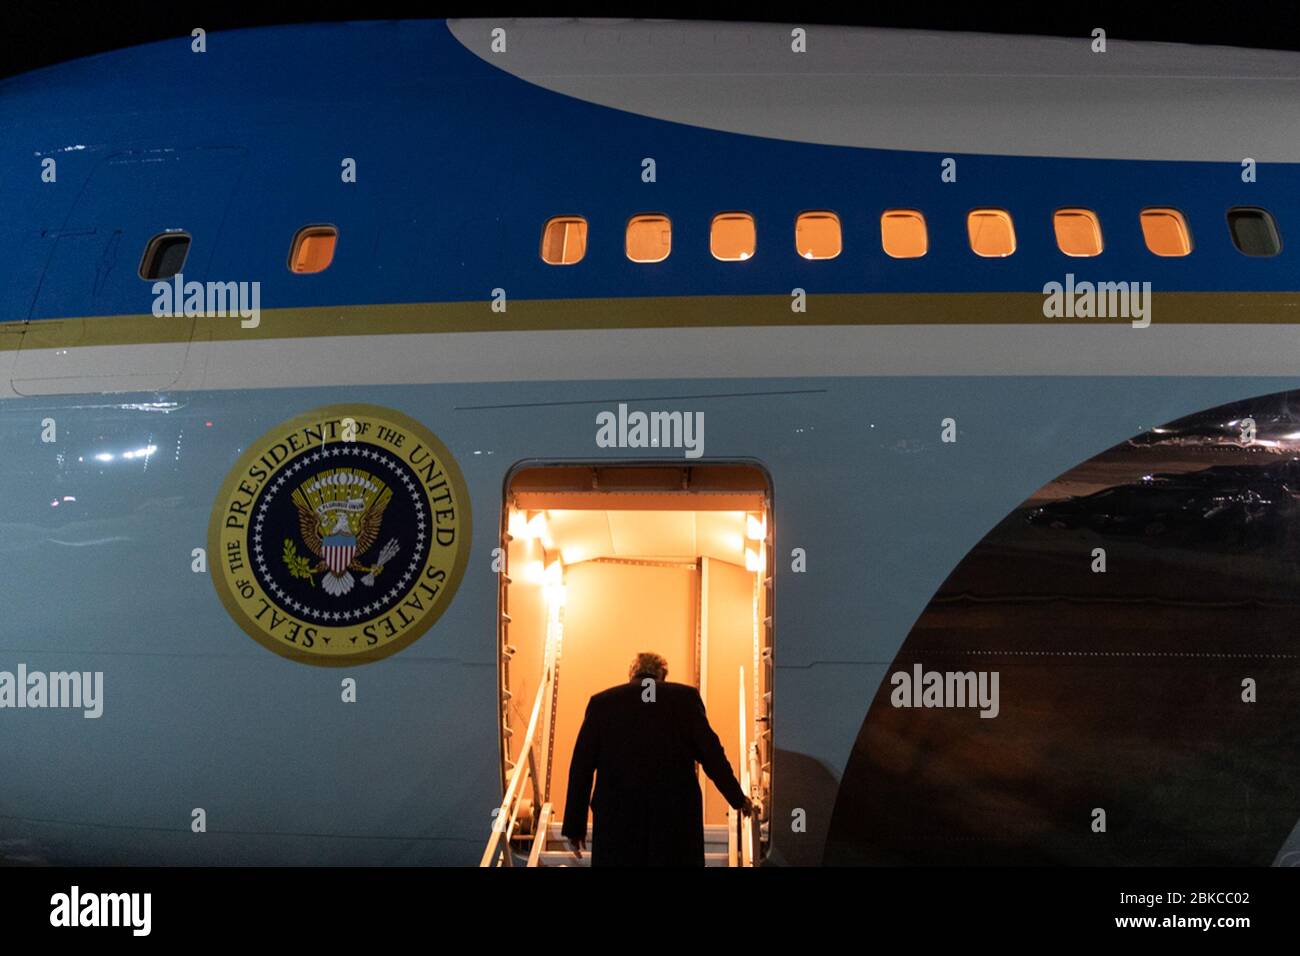 Präsident Donald J. Trump steigt die Treppe hinauf, um an Bord der Air Force One am Peterson Air Force Base in Colorado Springs, Colorado, Colorado, zu gehen.Donnerstagabend, 20. Februar 2020, für seinen Rückflug zum McCarran International Airport in Las Vegas. Präsident Trump Verlässt Colorado Stockfoto